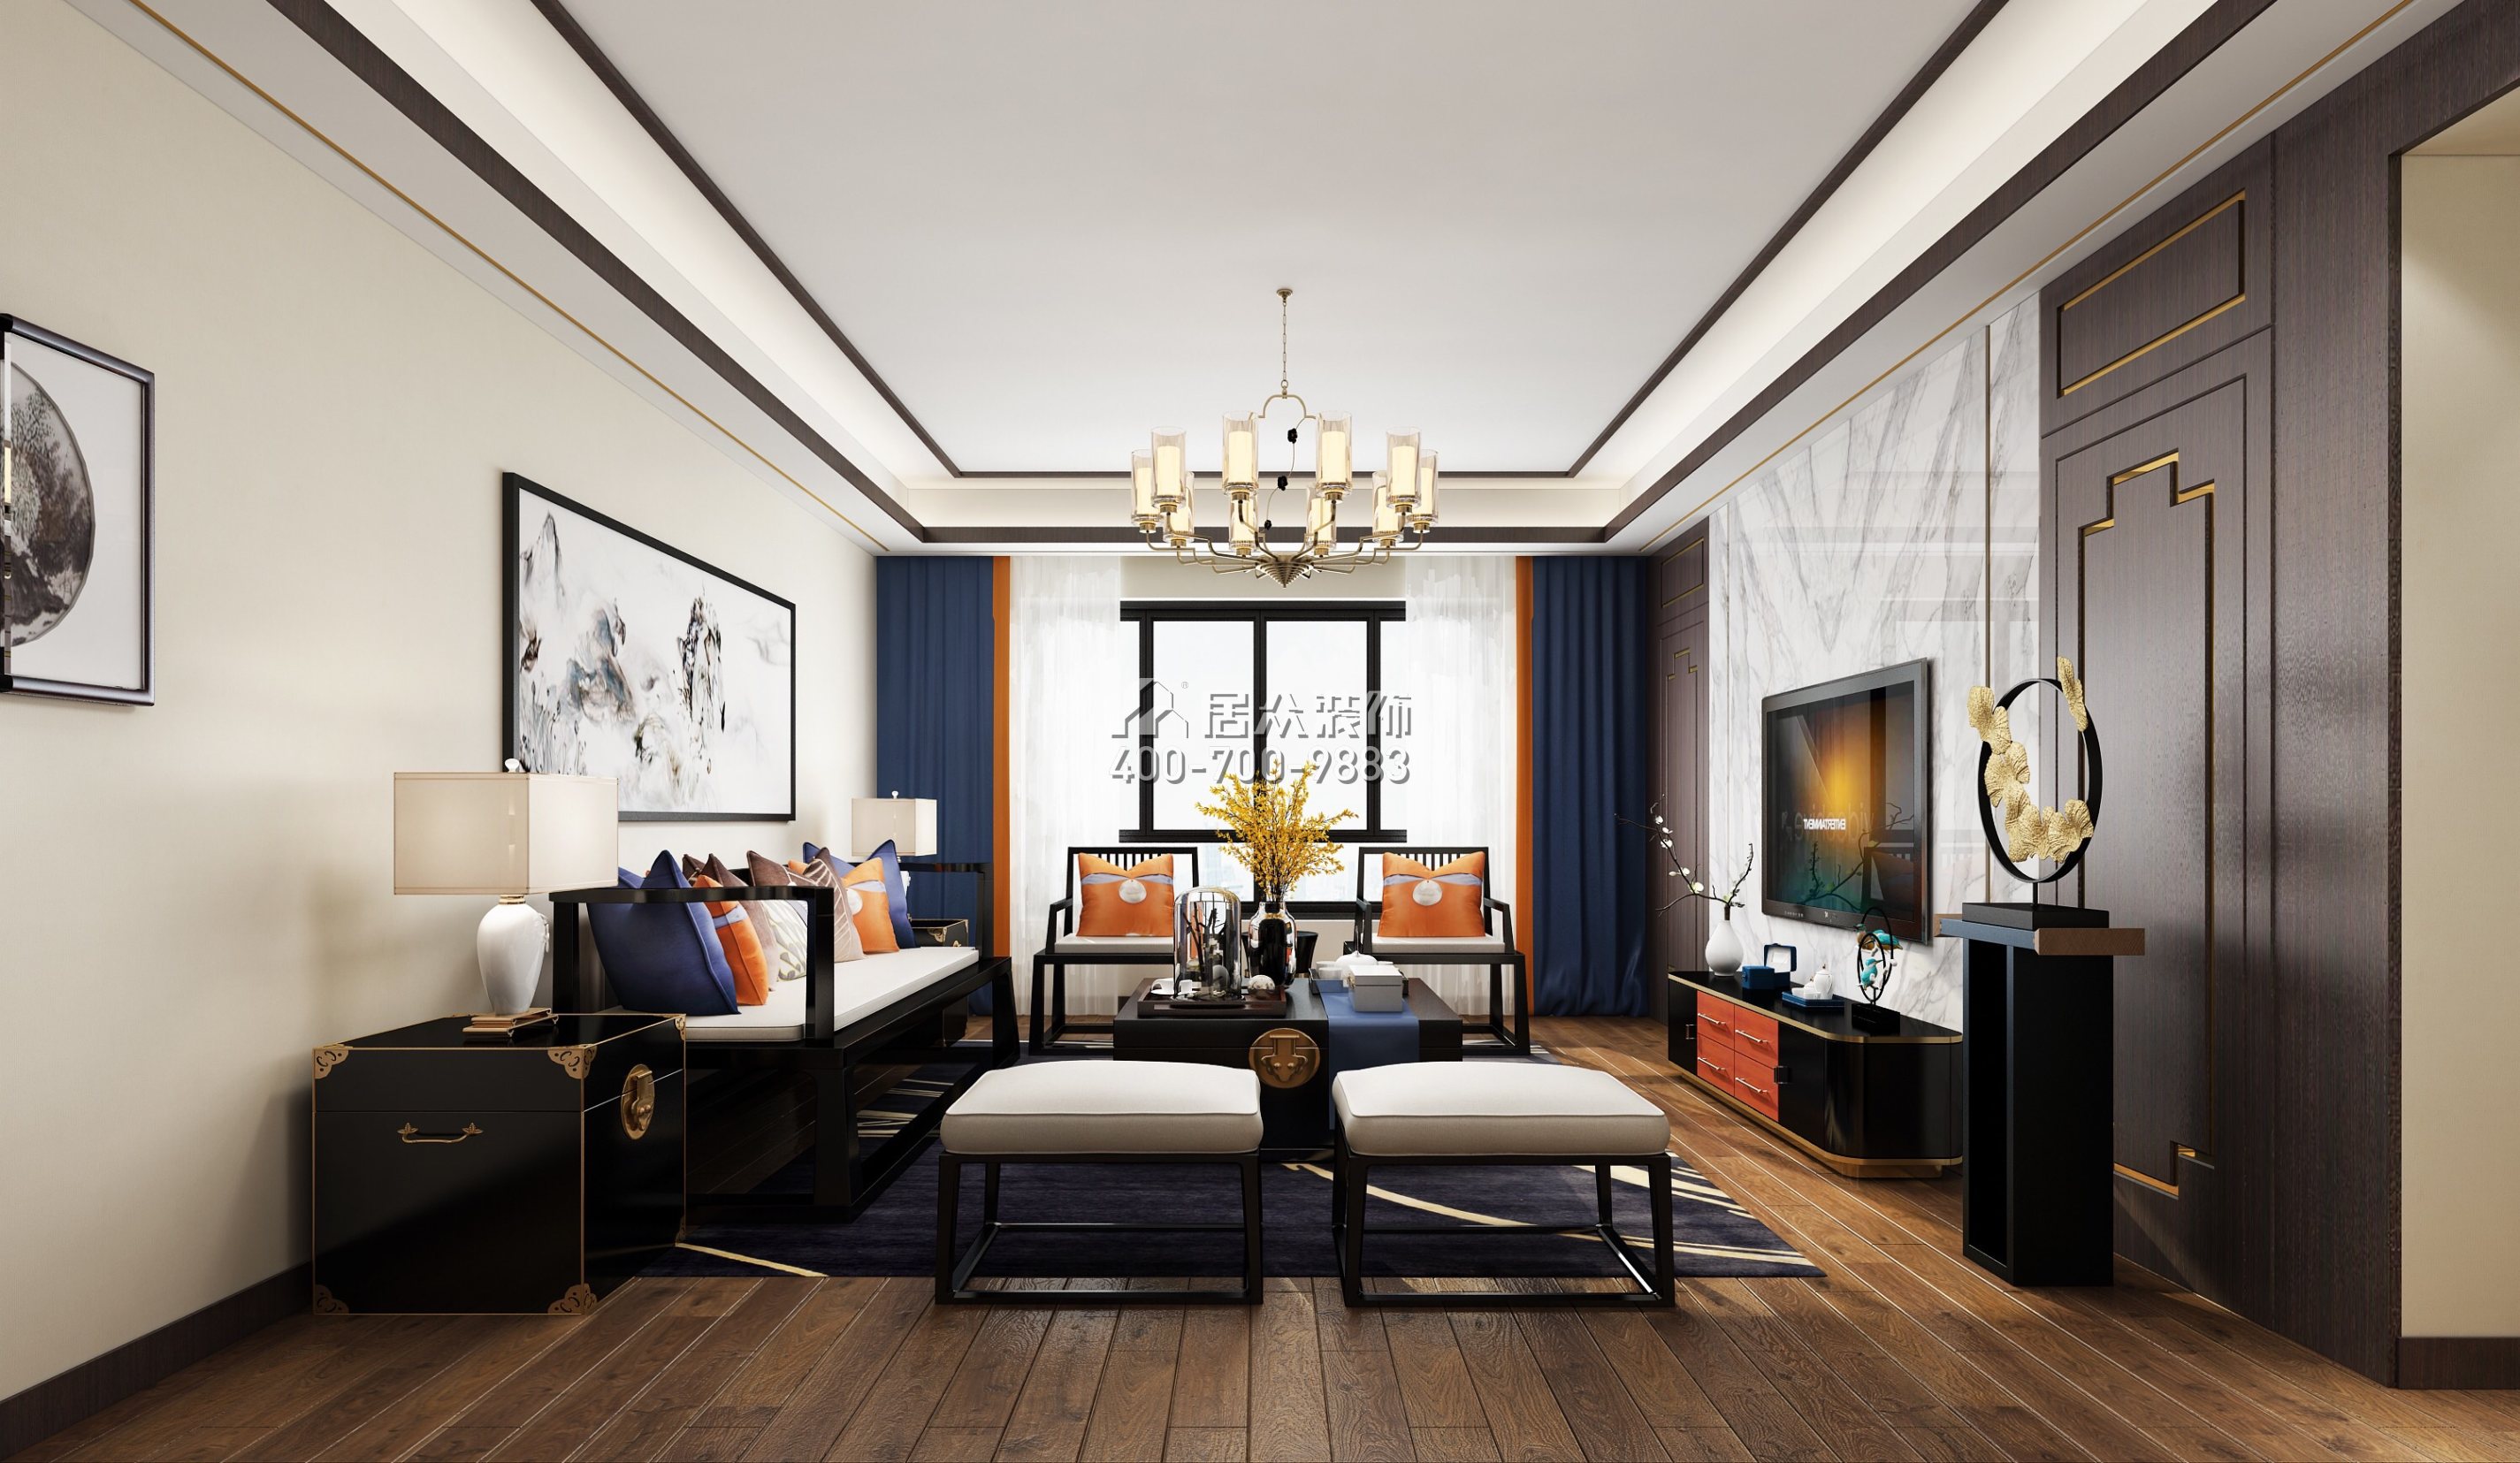 翠沁阁149平方米中式风格平层户型客厅装修效果图